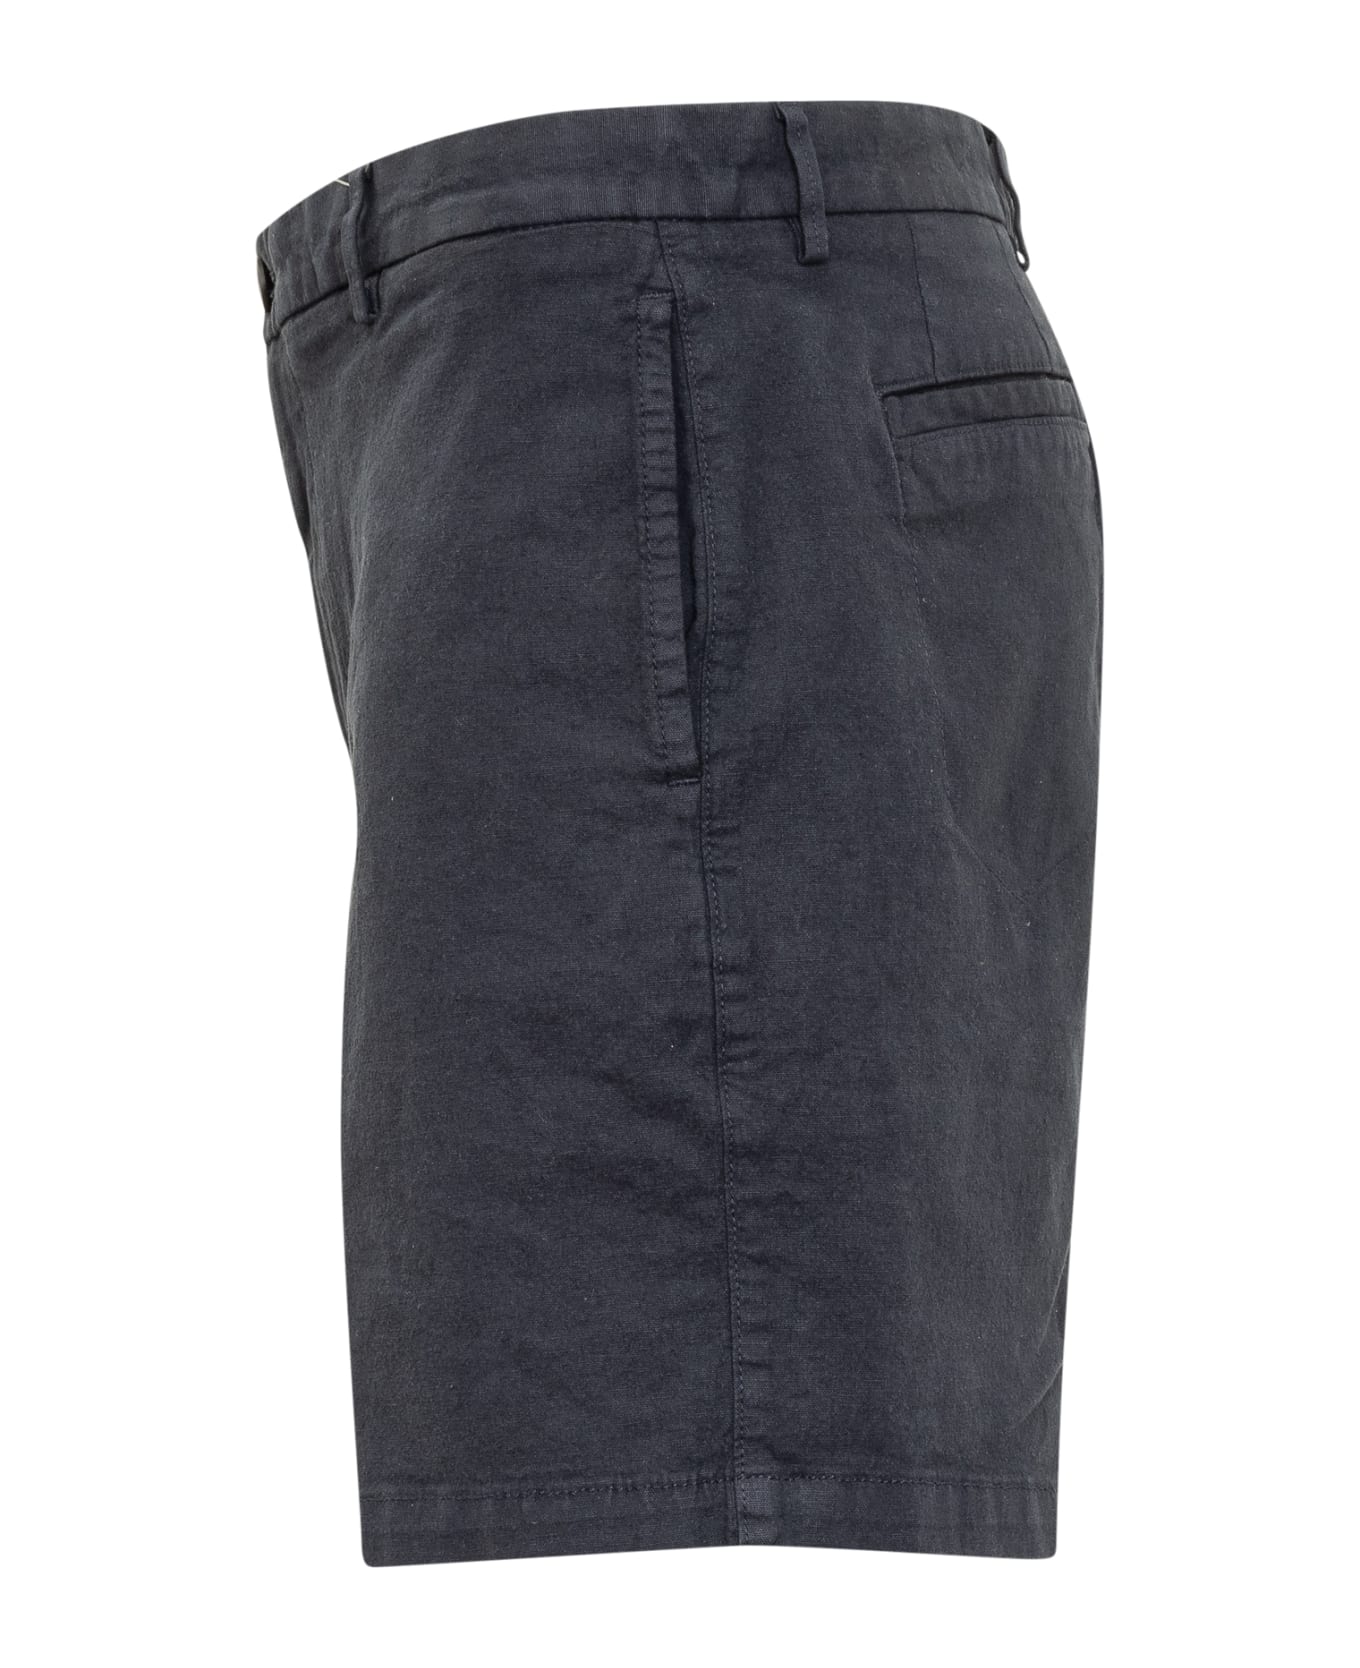 Hugo Boss Shorts - DARK BLUE